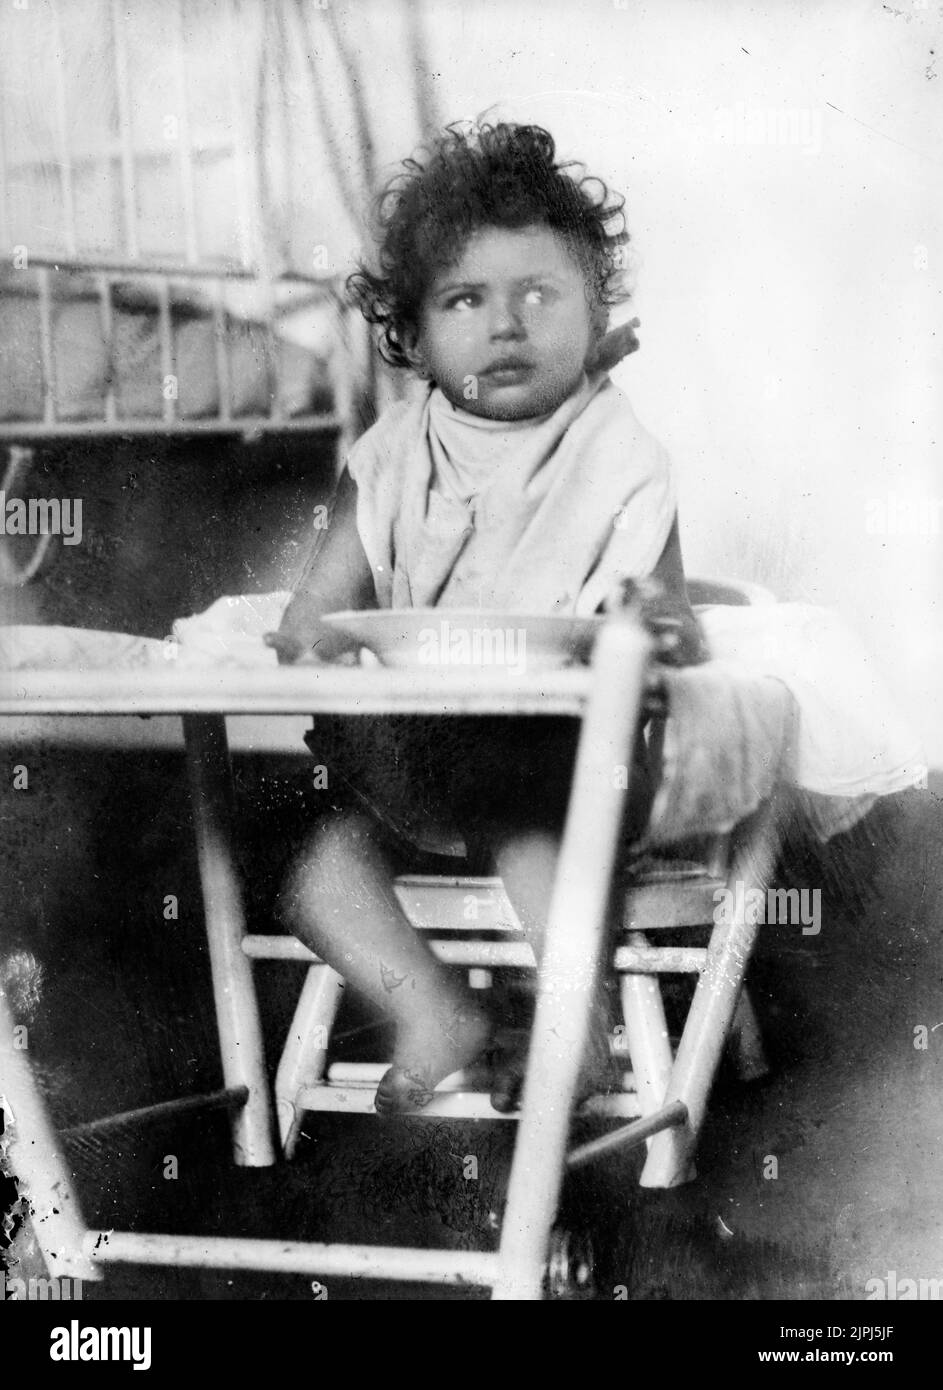 Niño ruso que padece tuberculosis, comiendo un plato preparado con leche condensada americana, proporcionado por la Cruz Roja en el Kinder Klinik de Viena, alrededor de 1920 Foto de stock